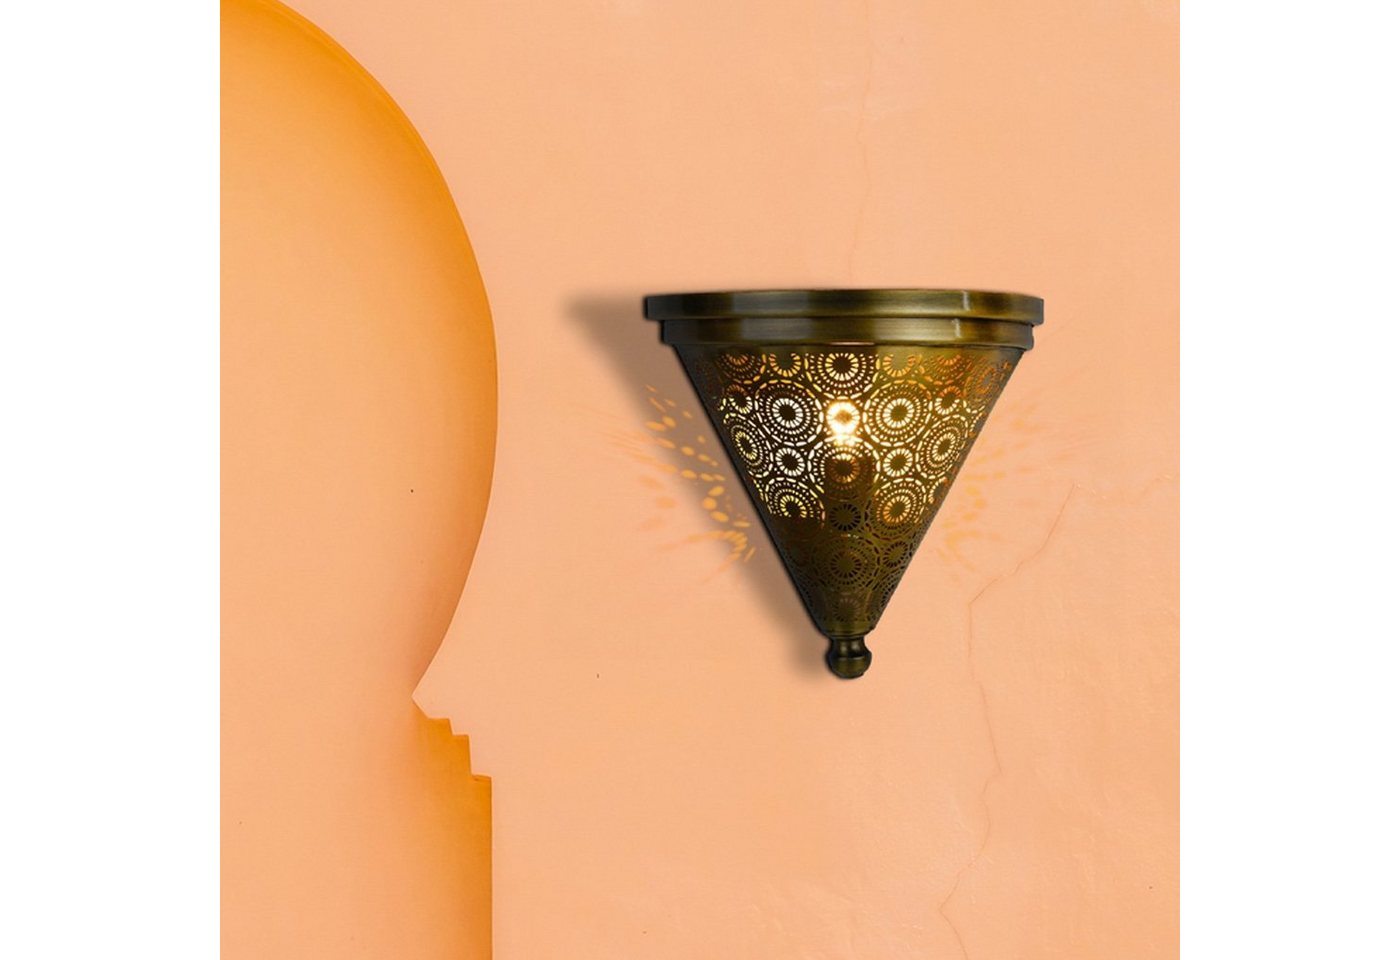 Marrakesch Orient & Mediterran Interior Wandleuchte Wandleuchte Firas, Wandlampe, Orientalische Lampe, Handarbeit von Marrakesch Orient & Mediterran Interior